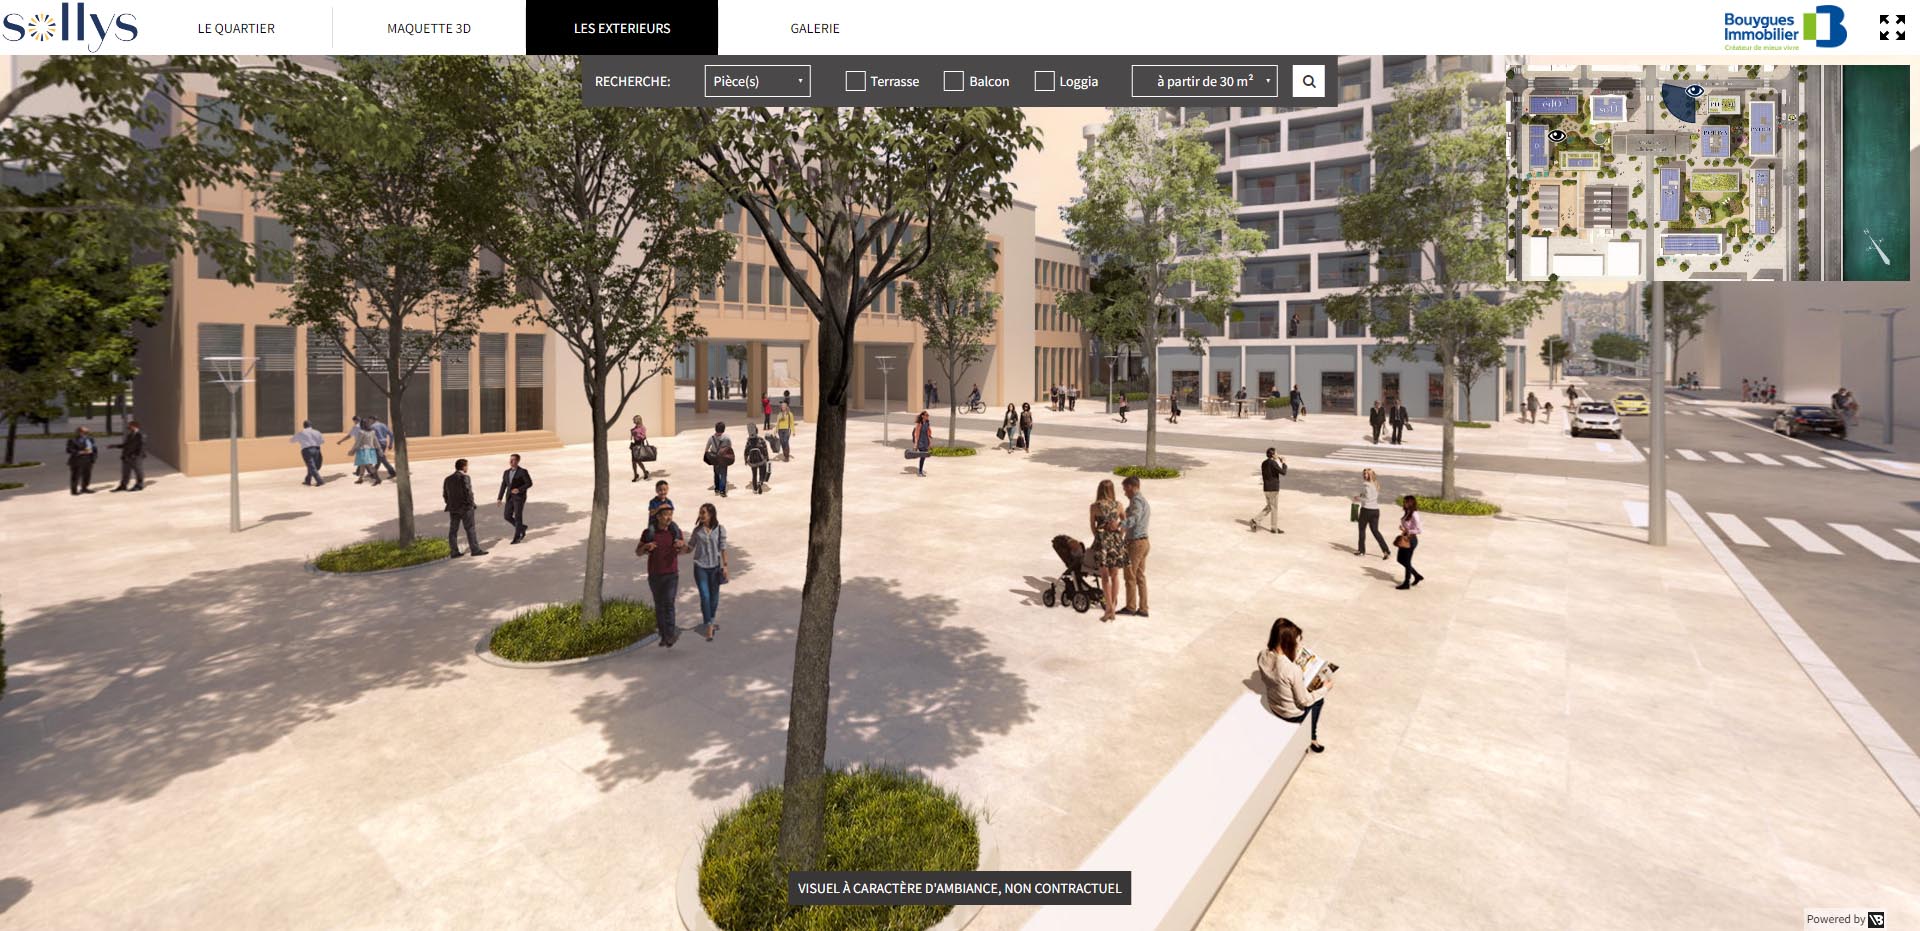 Sollys - Bouygues Immobilier - Visite virtuelle 3D